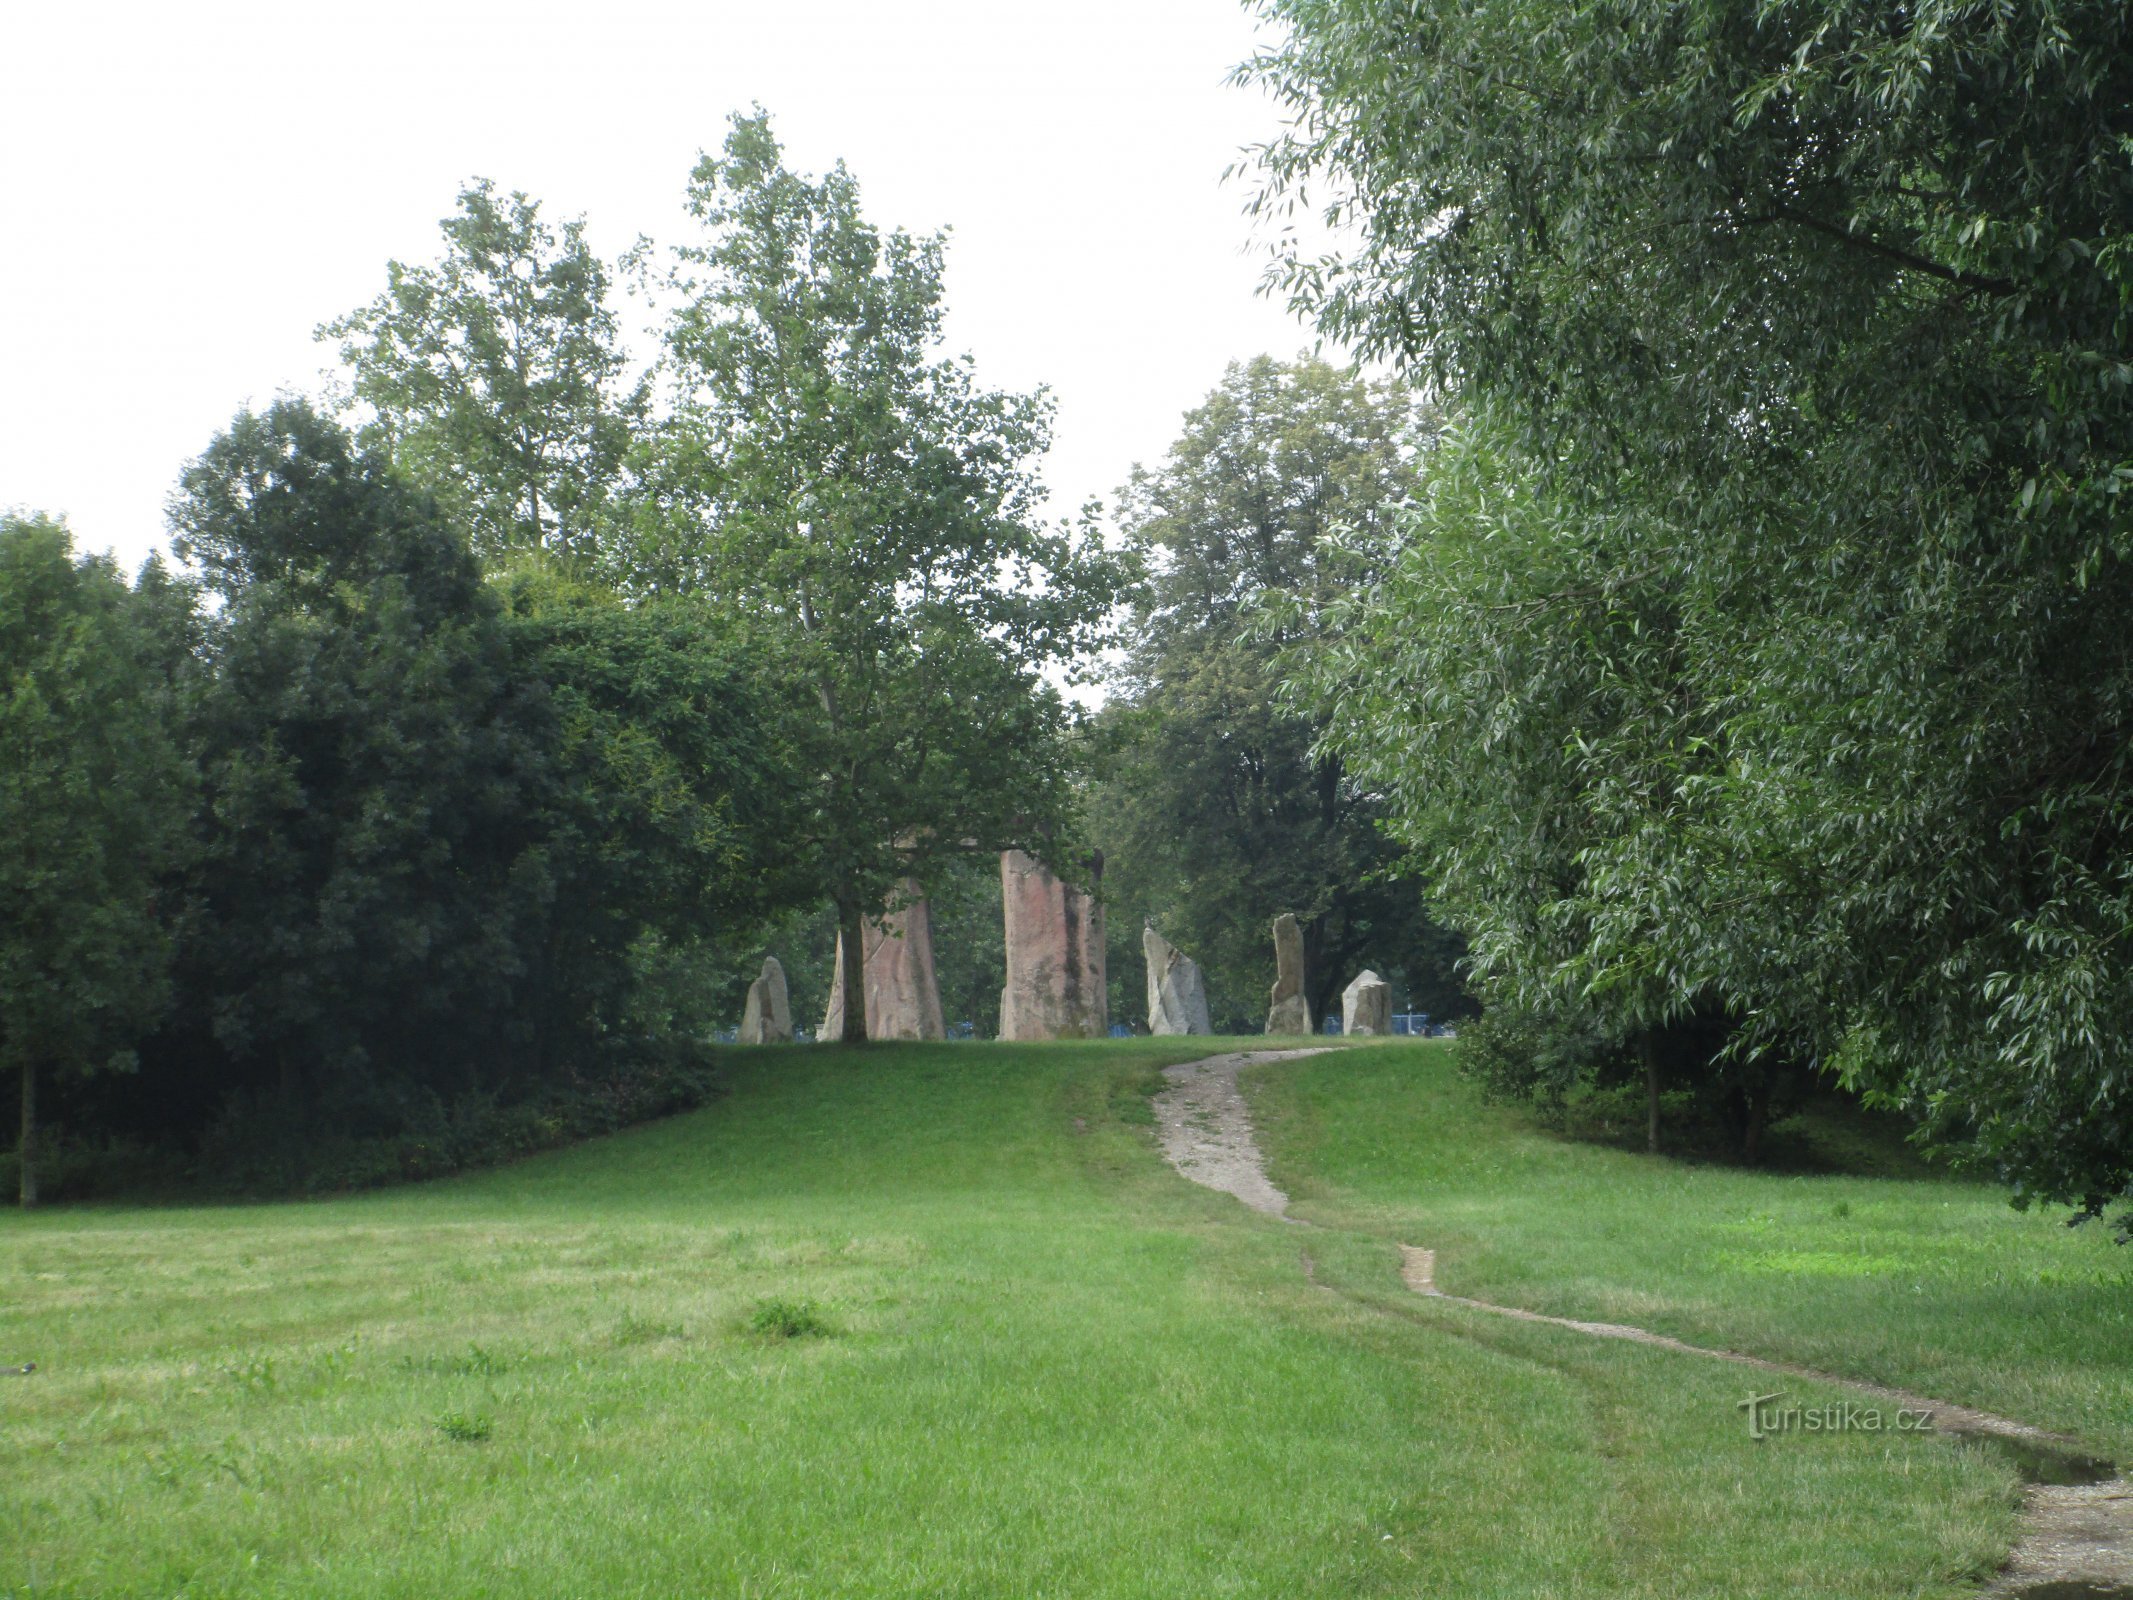 widok repliki Stonehenge z Parku Leśnego Soutok